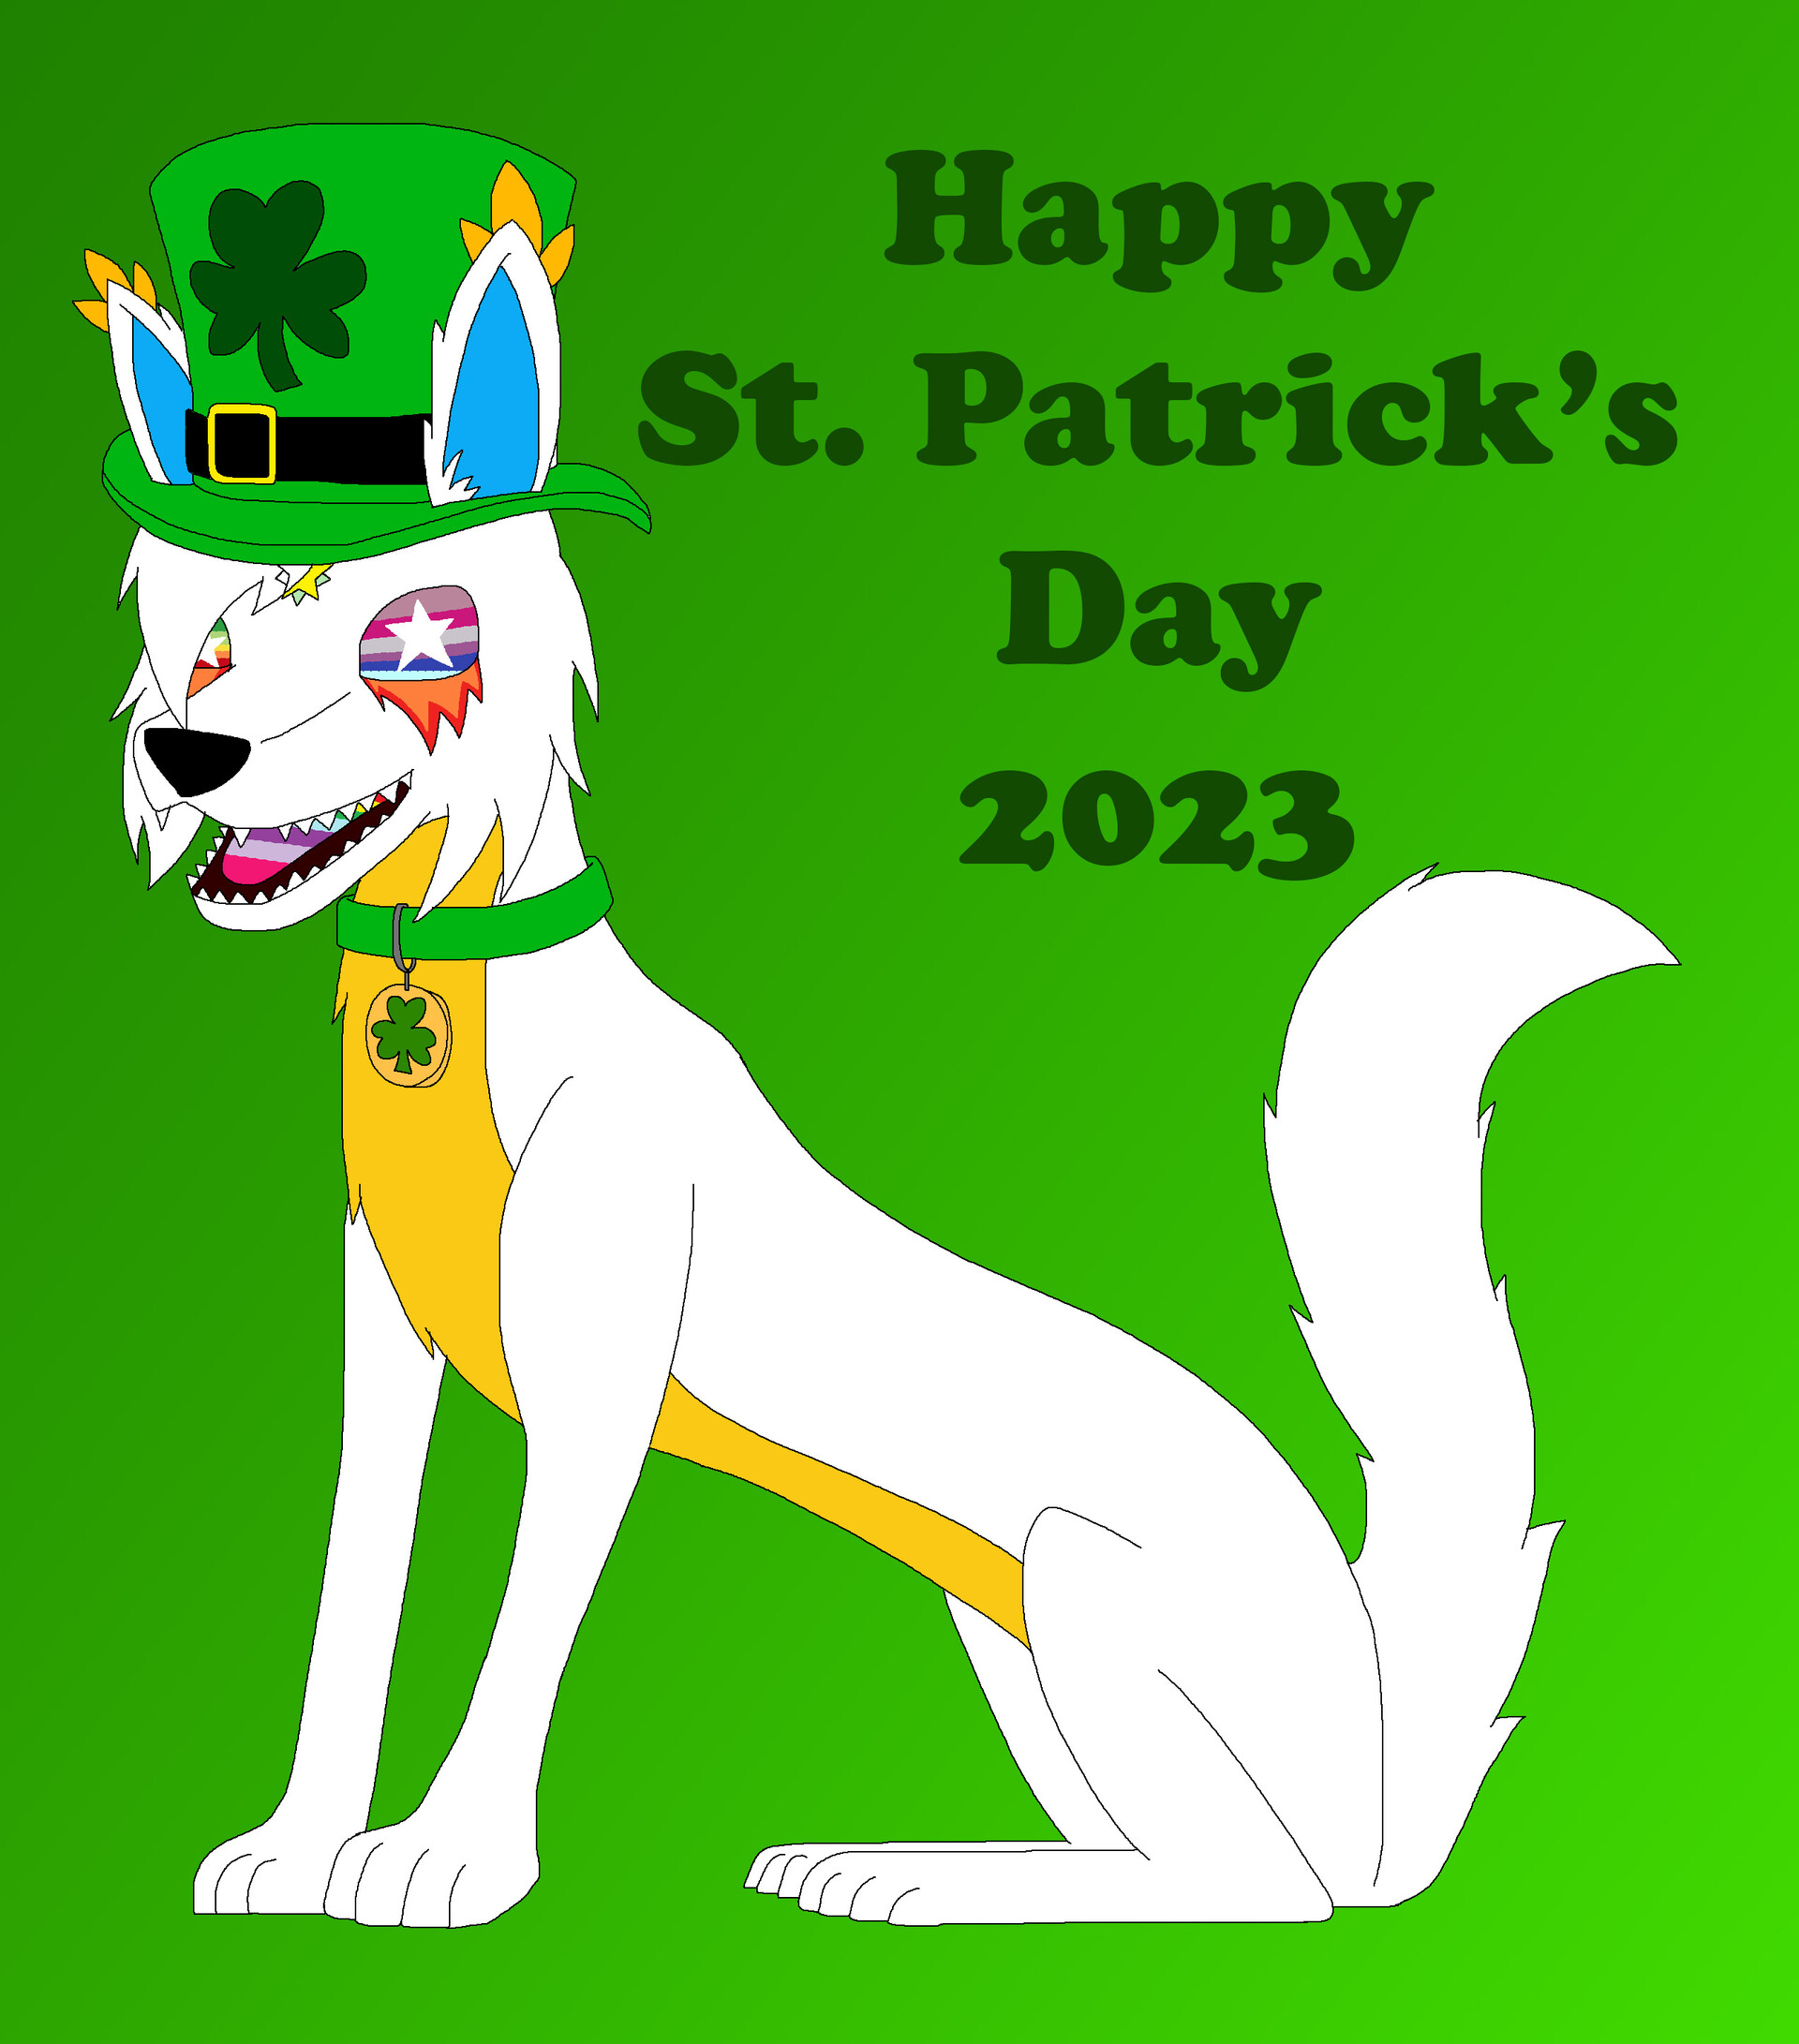 Wear Green! Happy Saint Patrick's Day in 2023